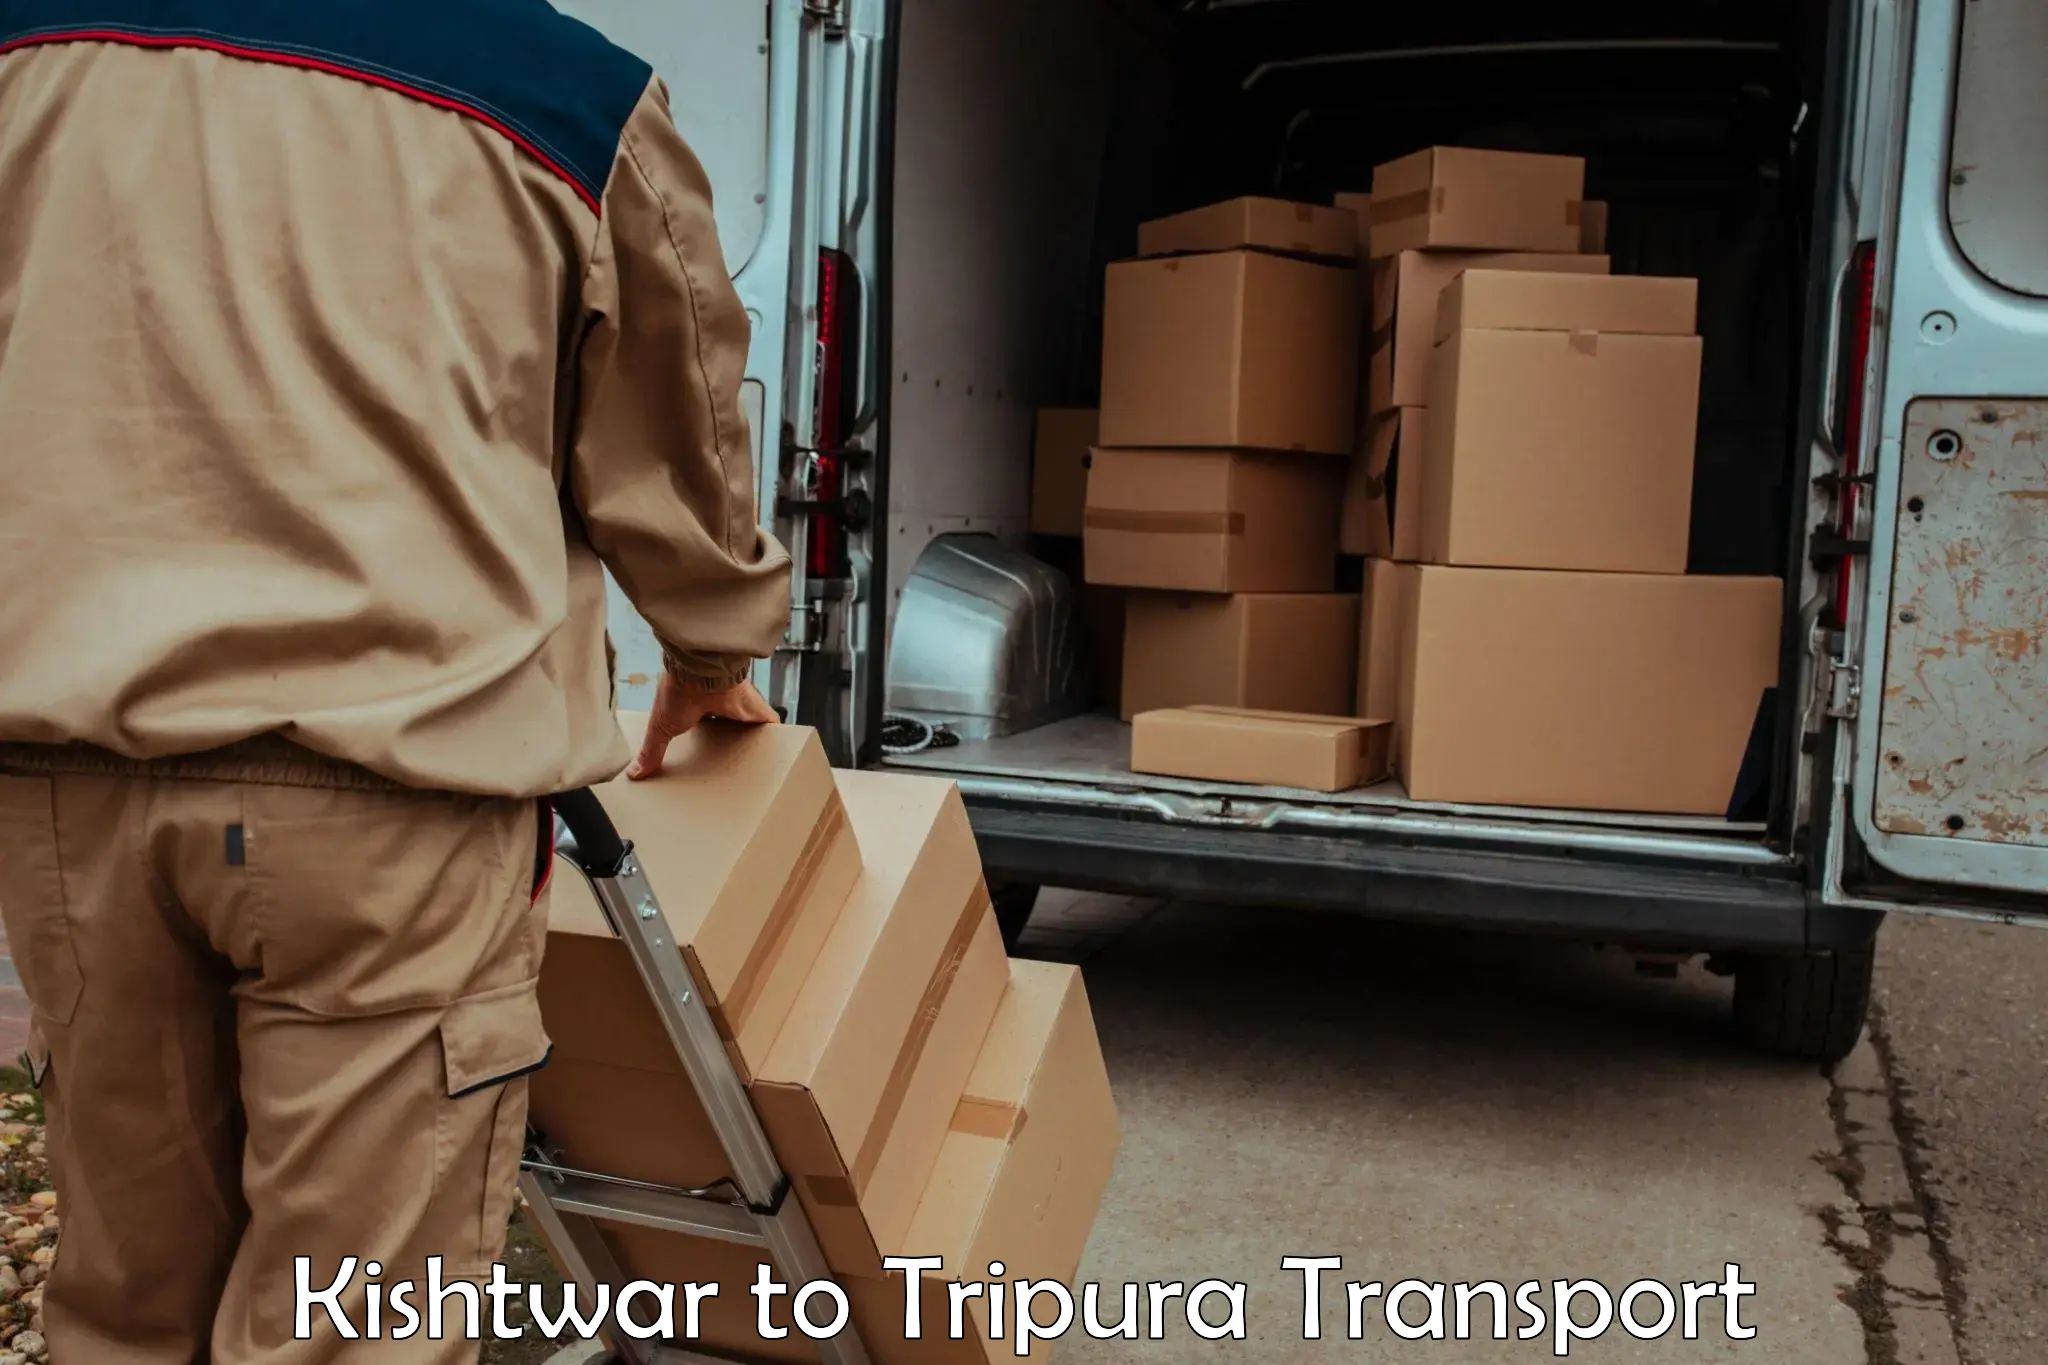 Pick up transport service Kishtwar to IIIT Agartala